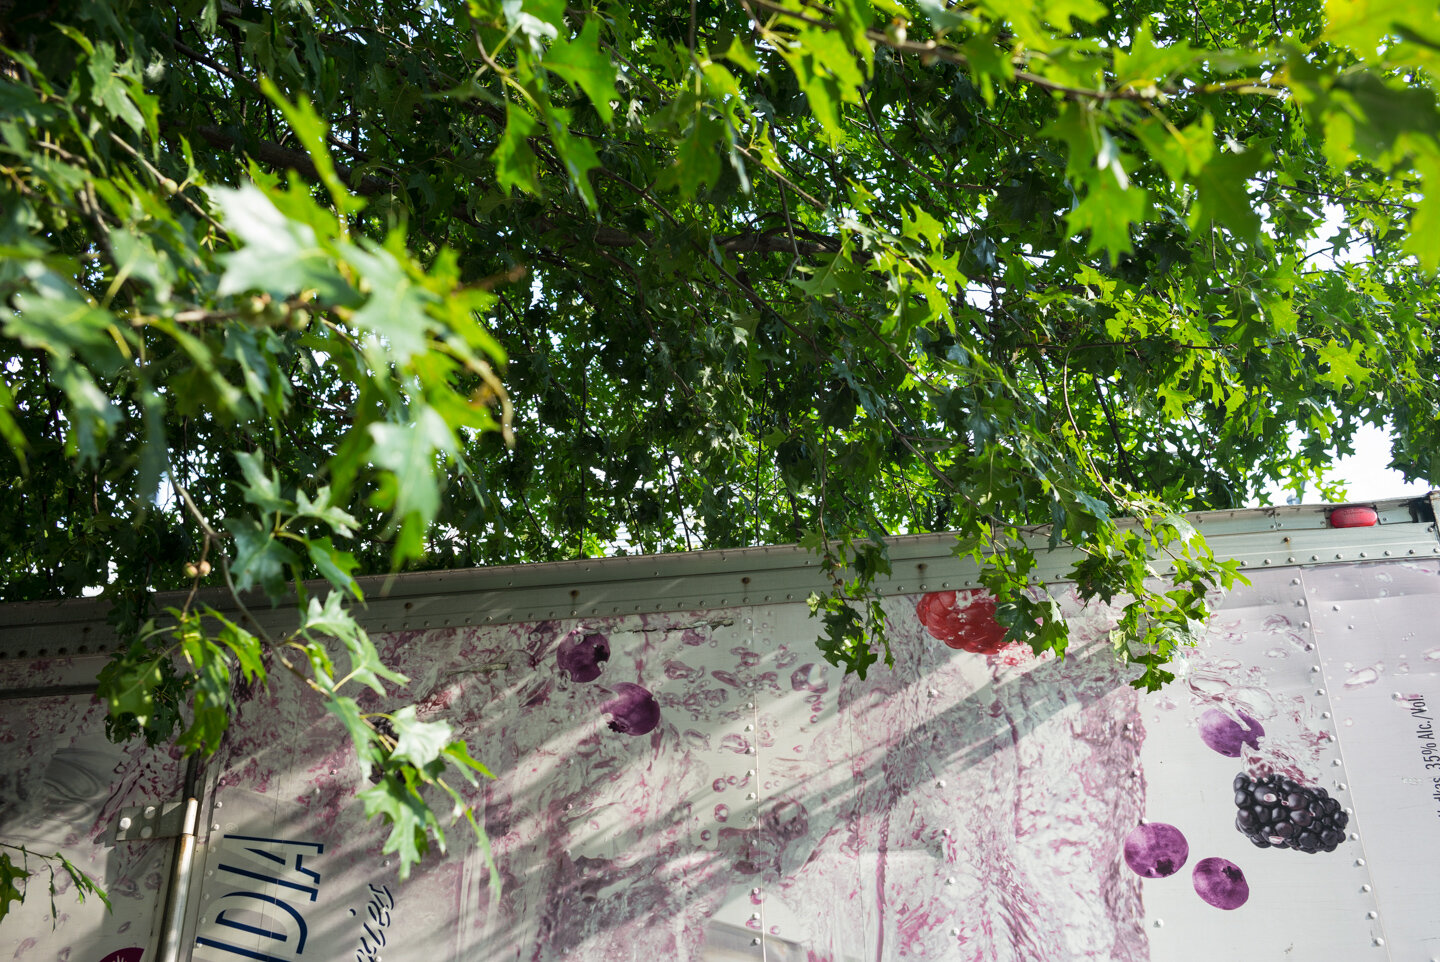 Leaves & Berries. Greenpoint, Brooklyn 2014